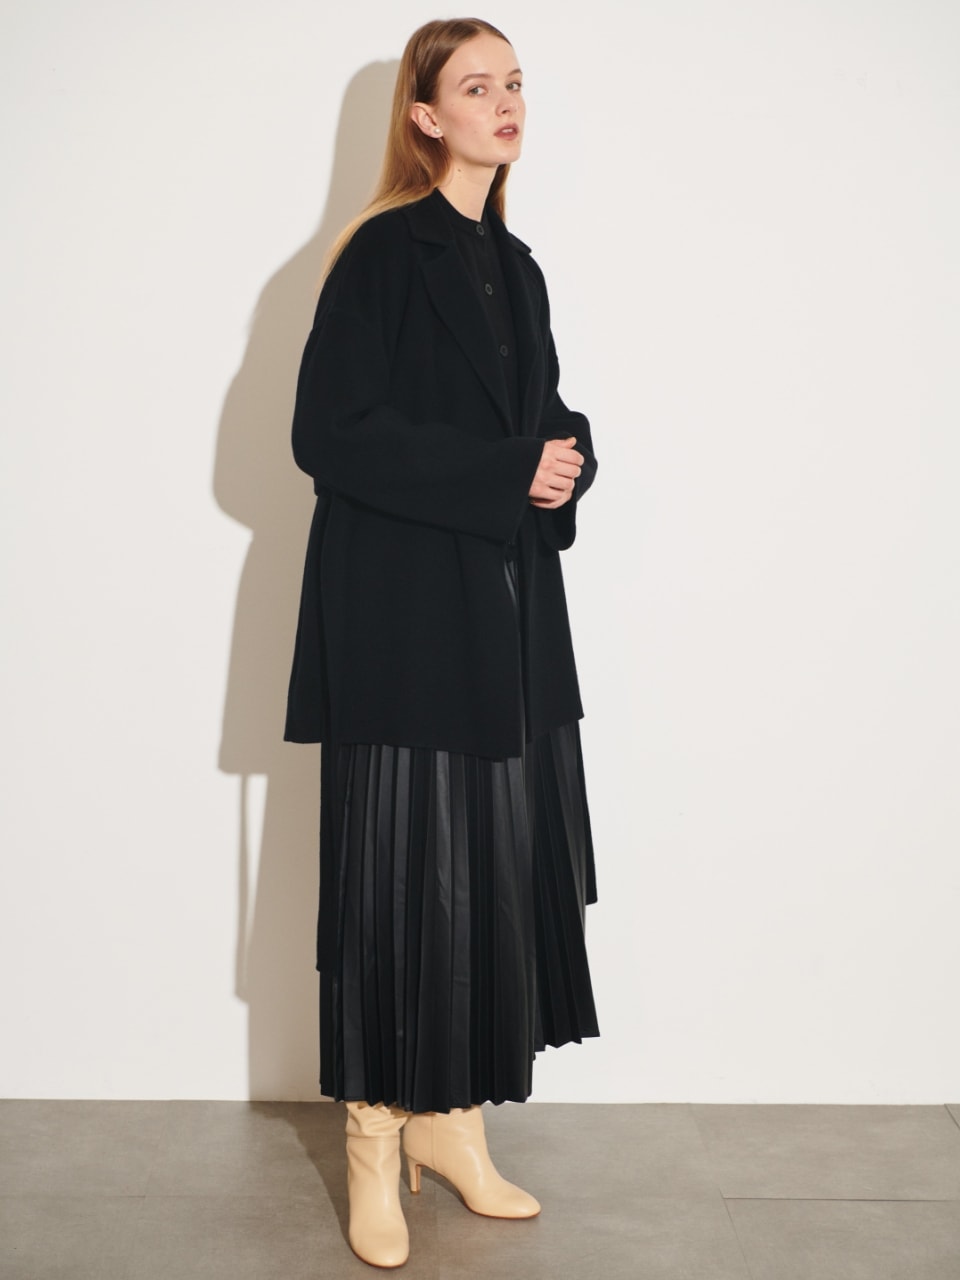 ベルテッドミドル丈リバーコート（ブラック）を着用した女性の全身の写真